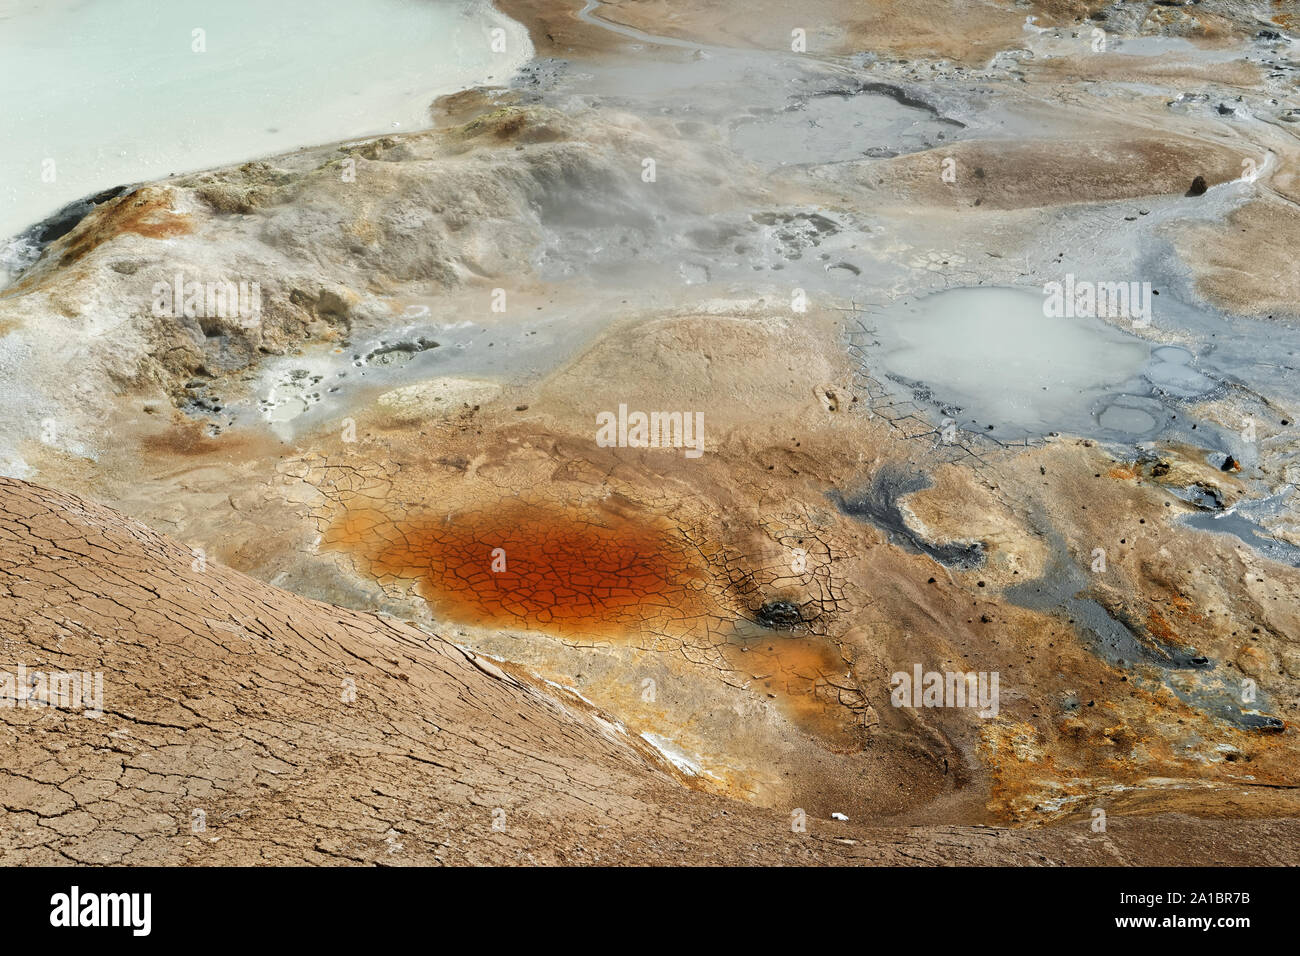 Aktive geothermale Region mit farbigen Böden, Schlamm und Wasser Oberflächen, detaillierte Ansicht - Ort: Island Stockfoto